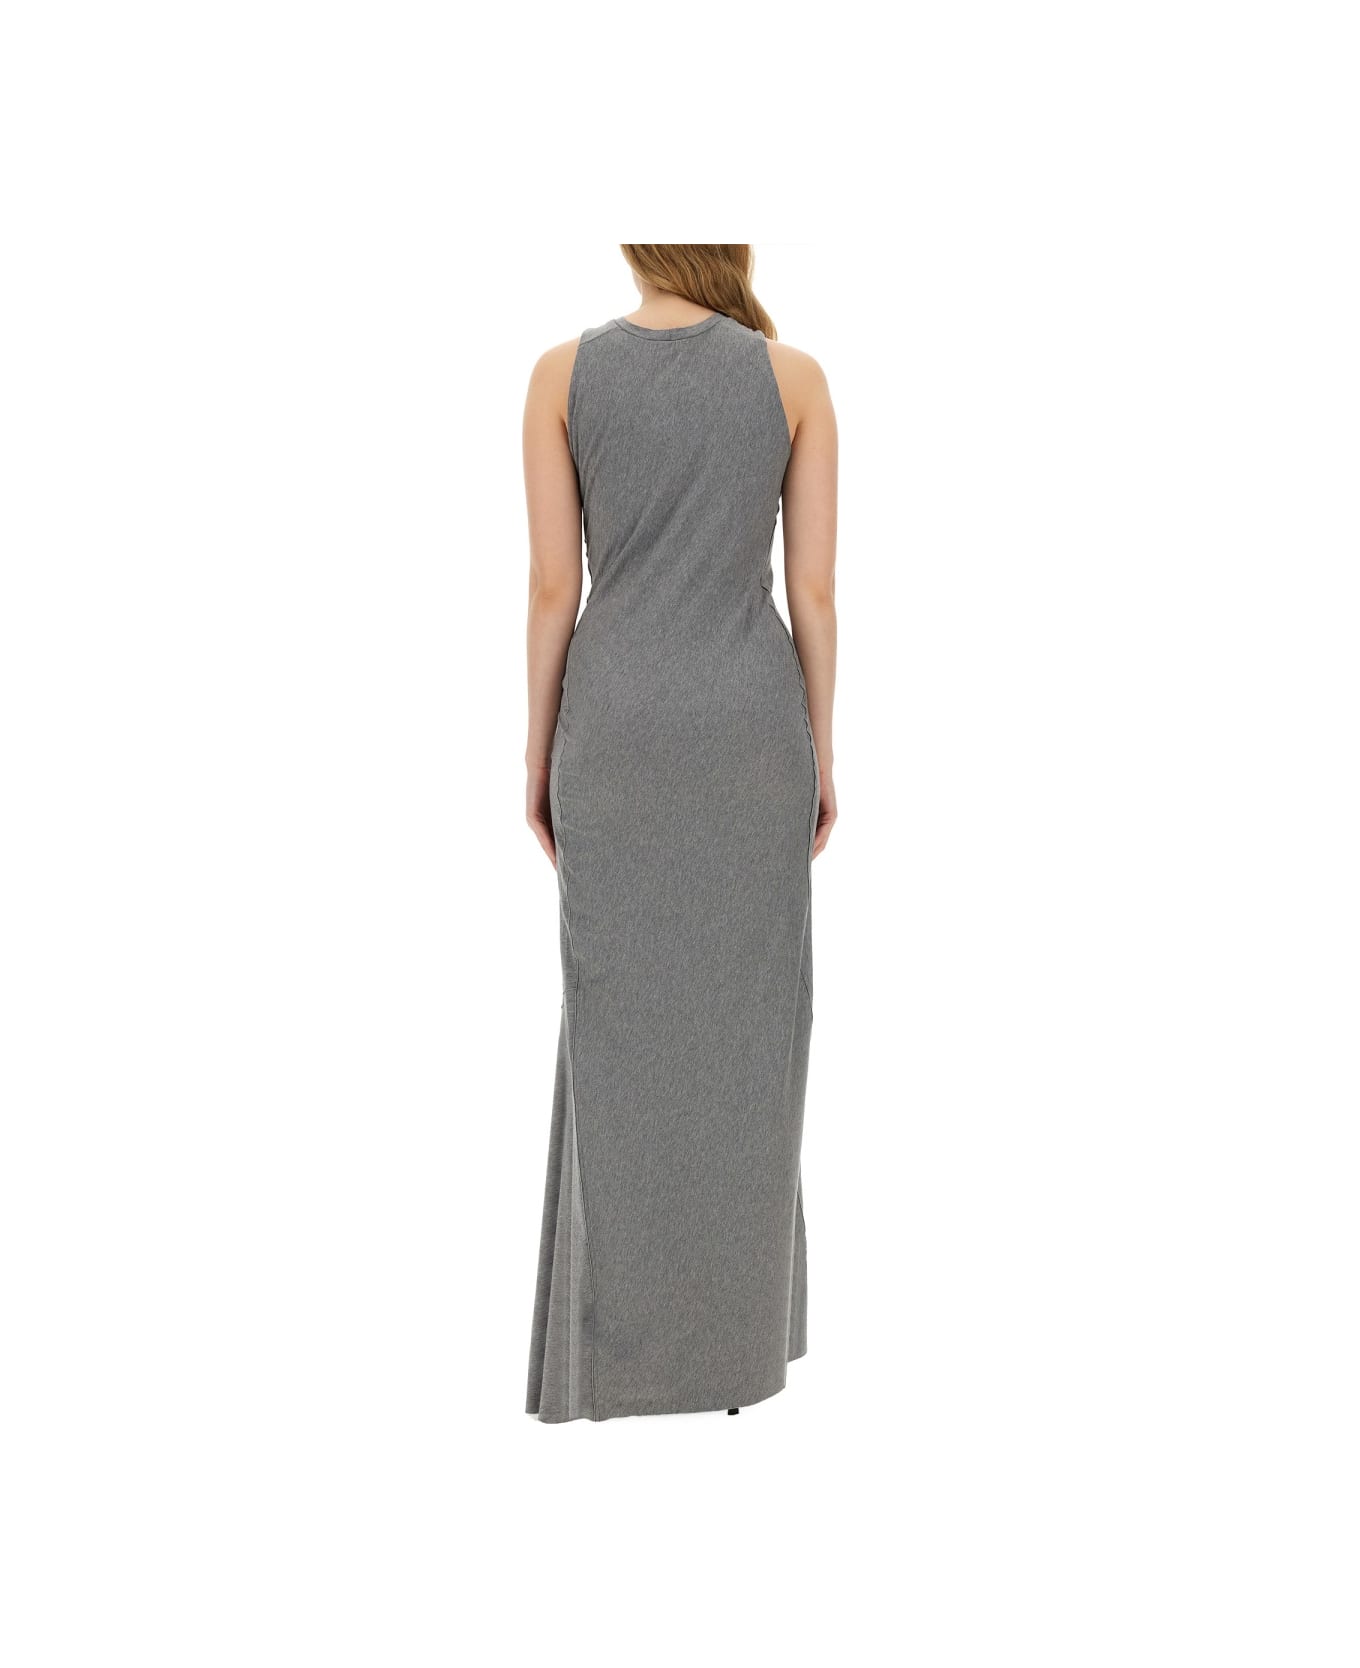 Victoria Beckham Long Dress - GREY